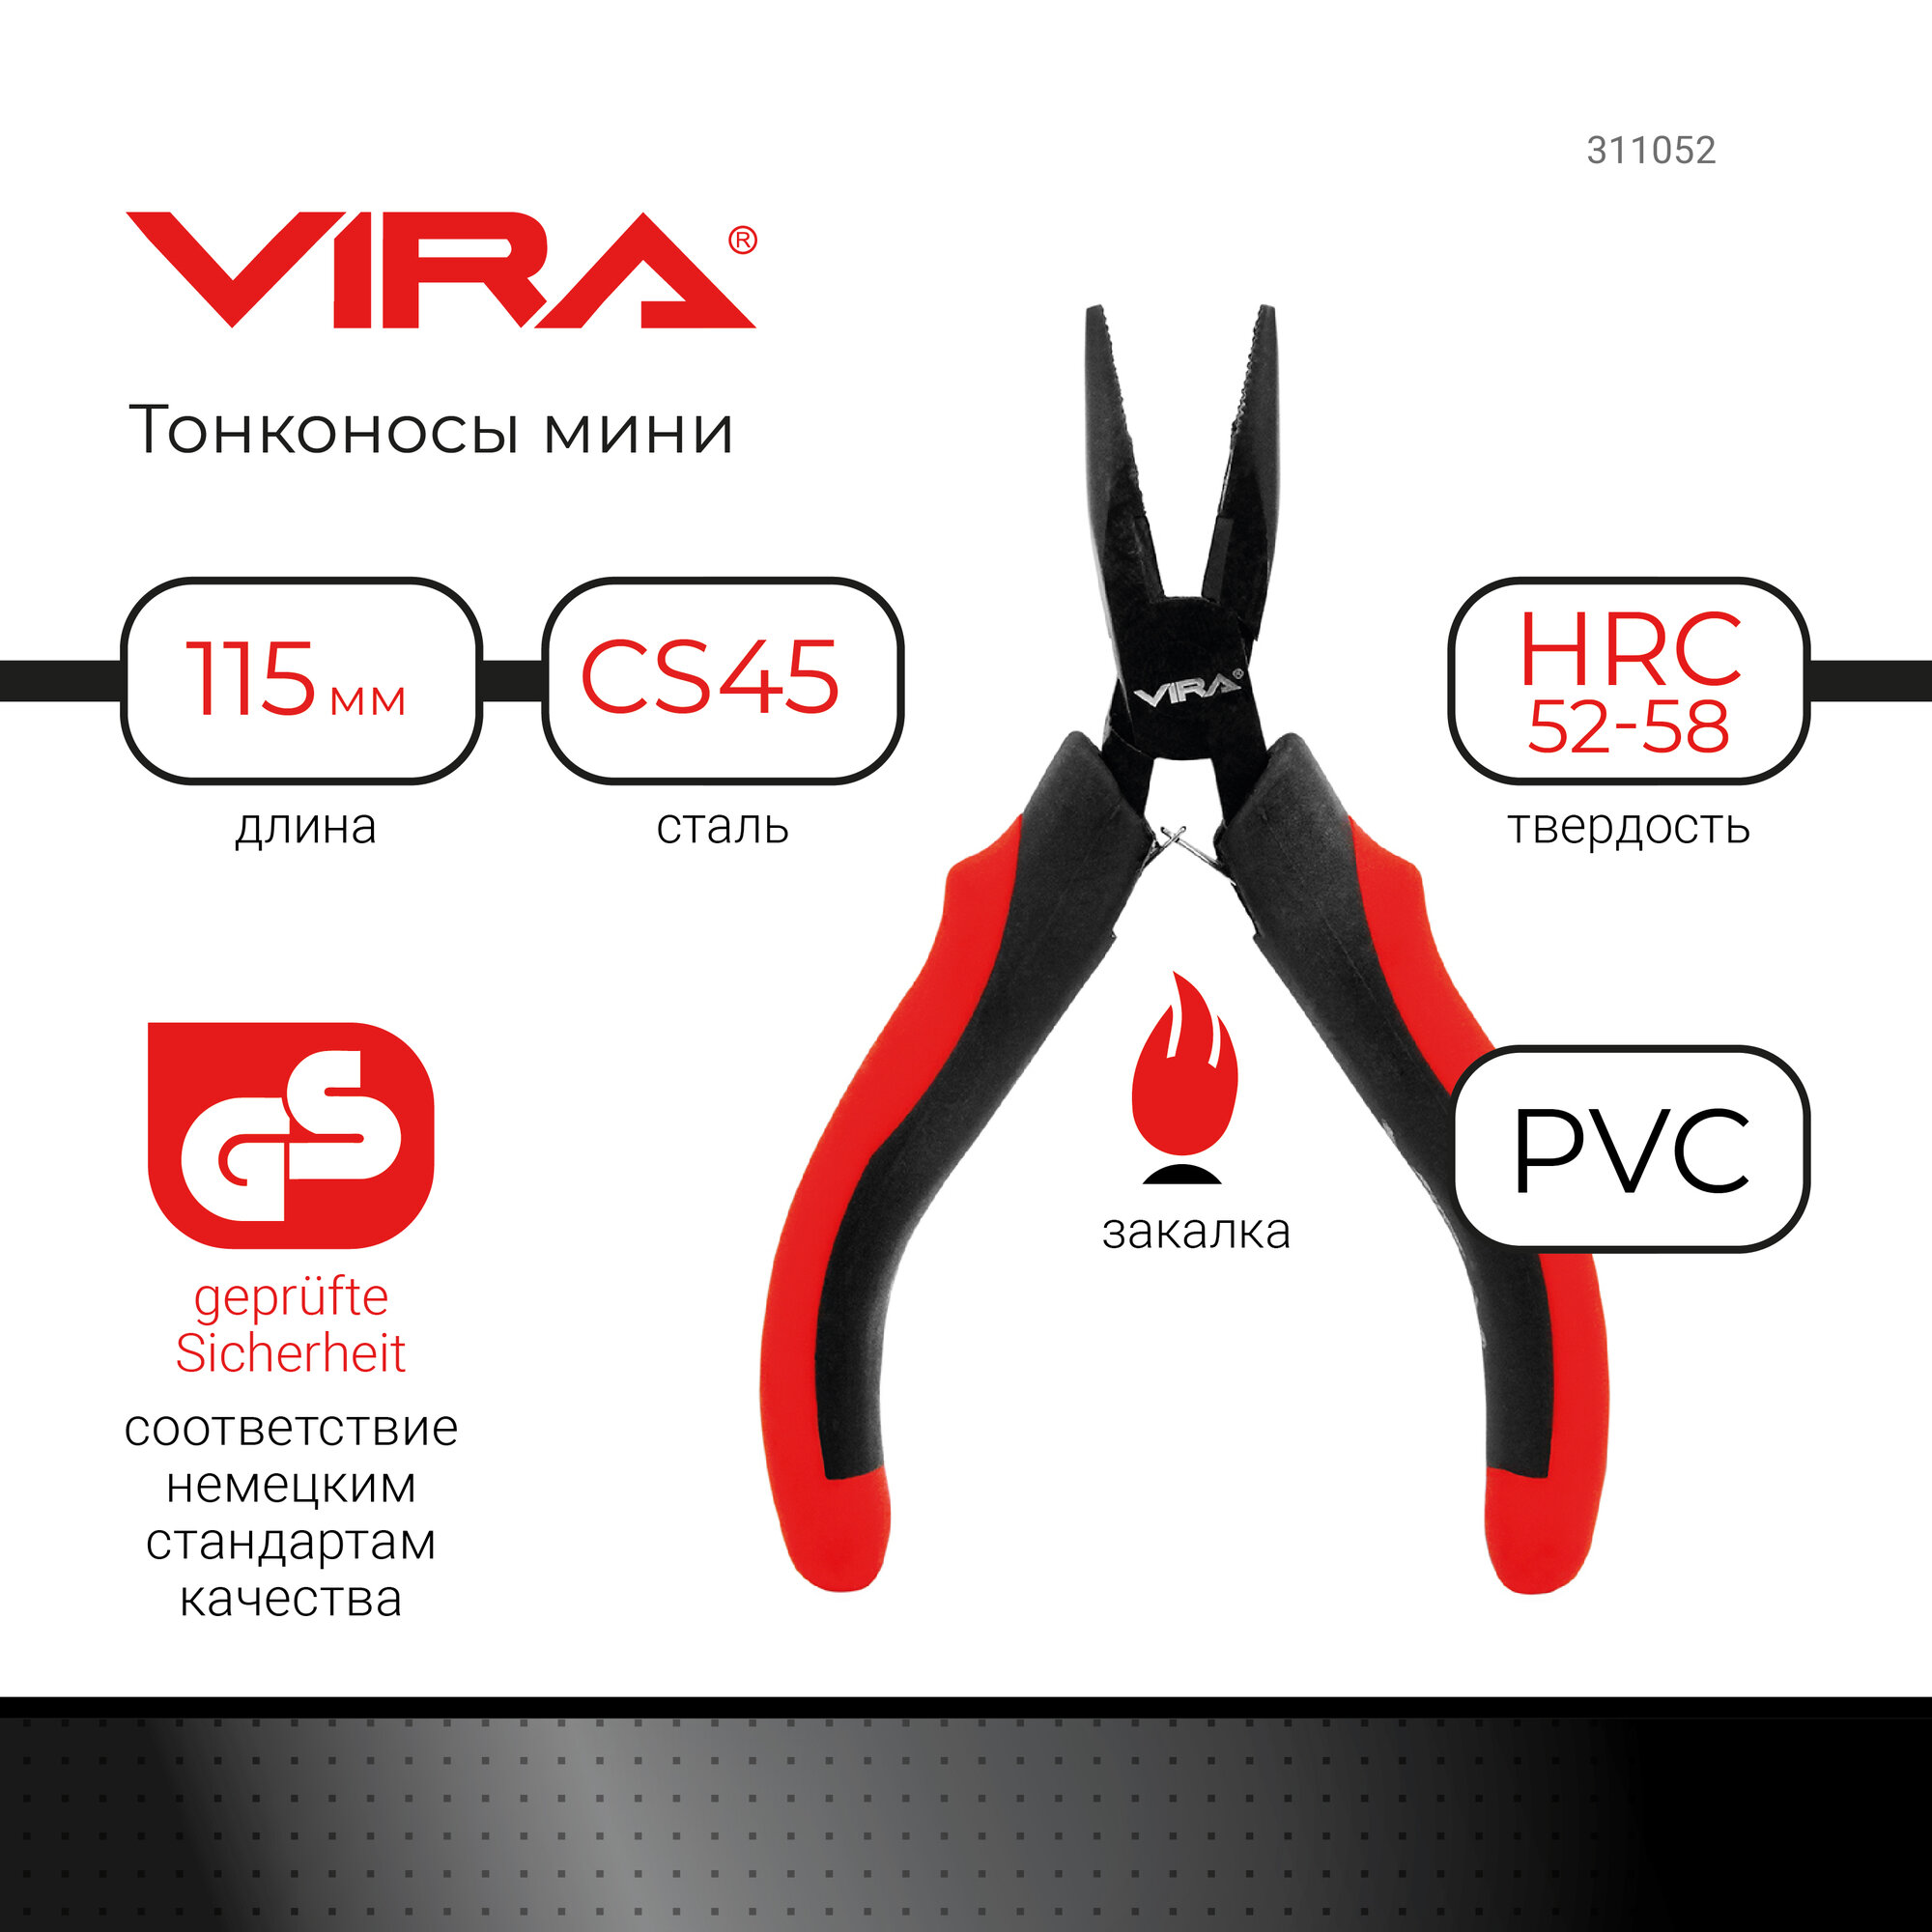 Тонконосы мини VIRA 4.5 двухкомпонентные ручки